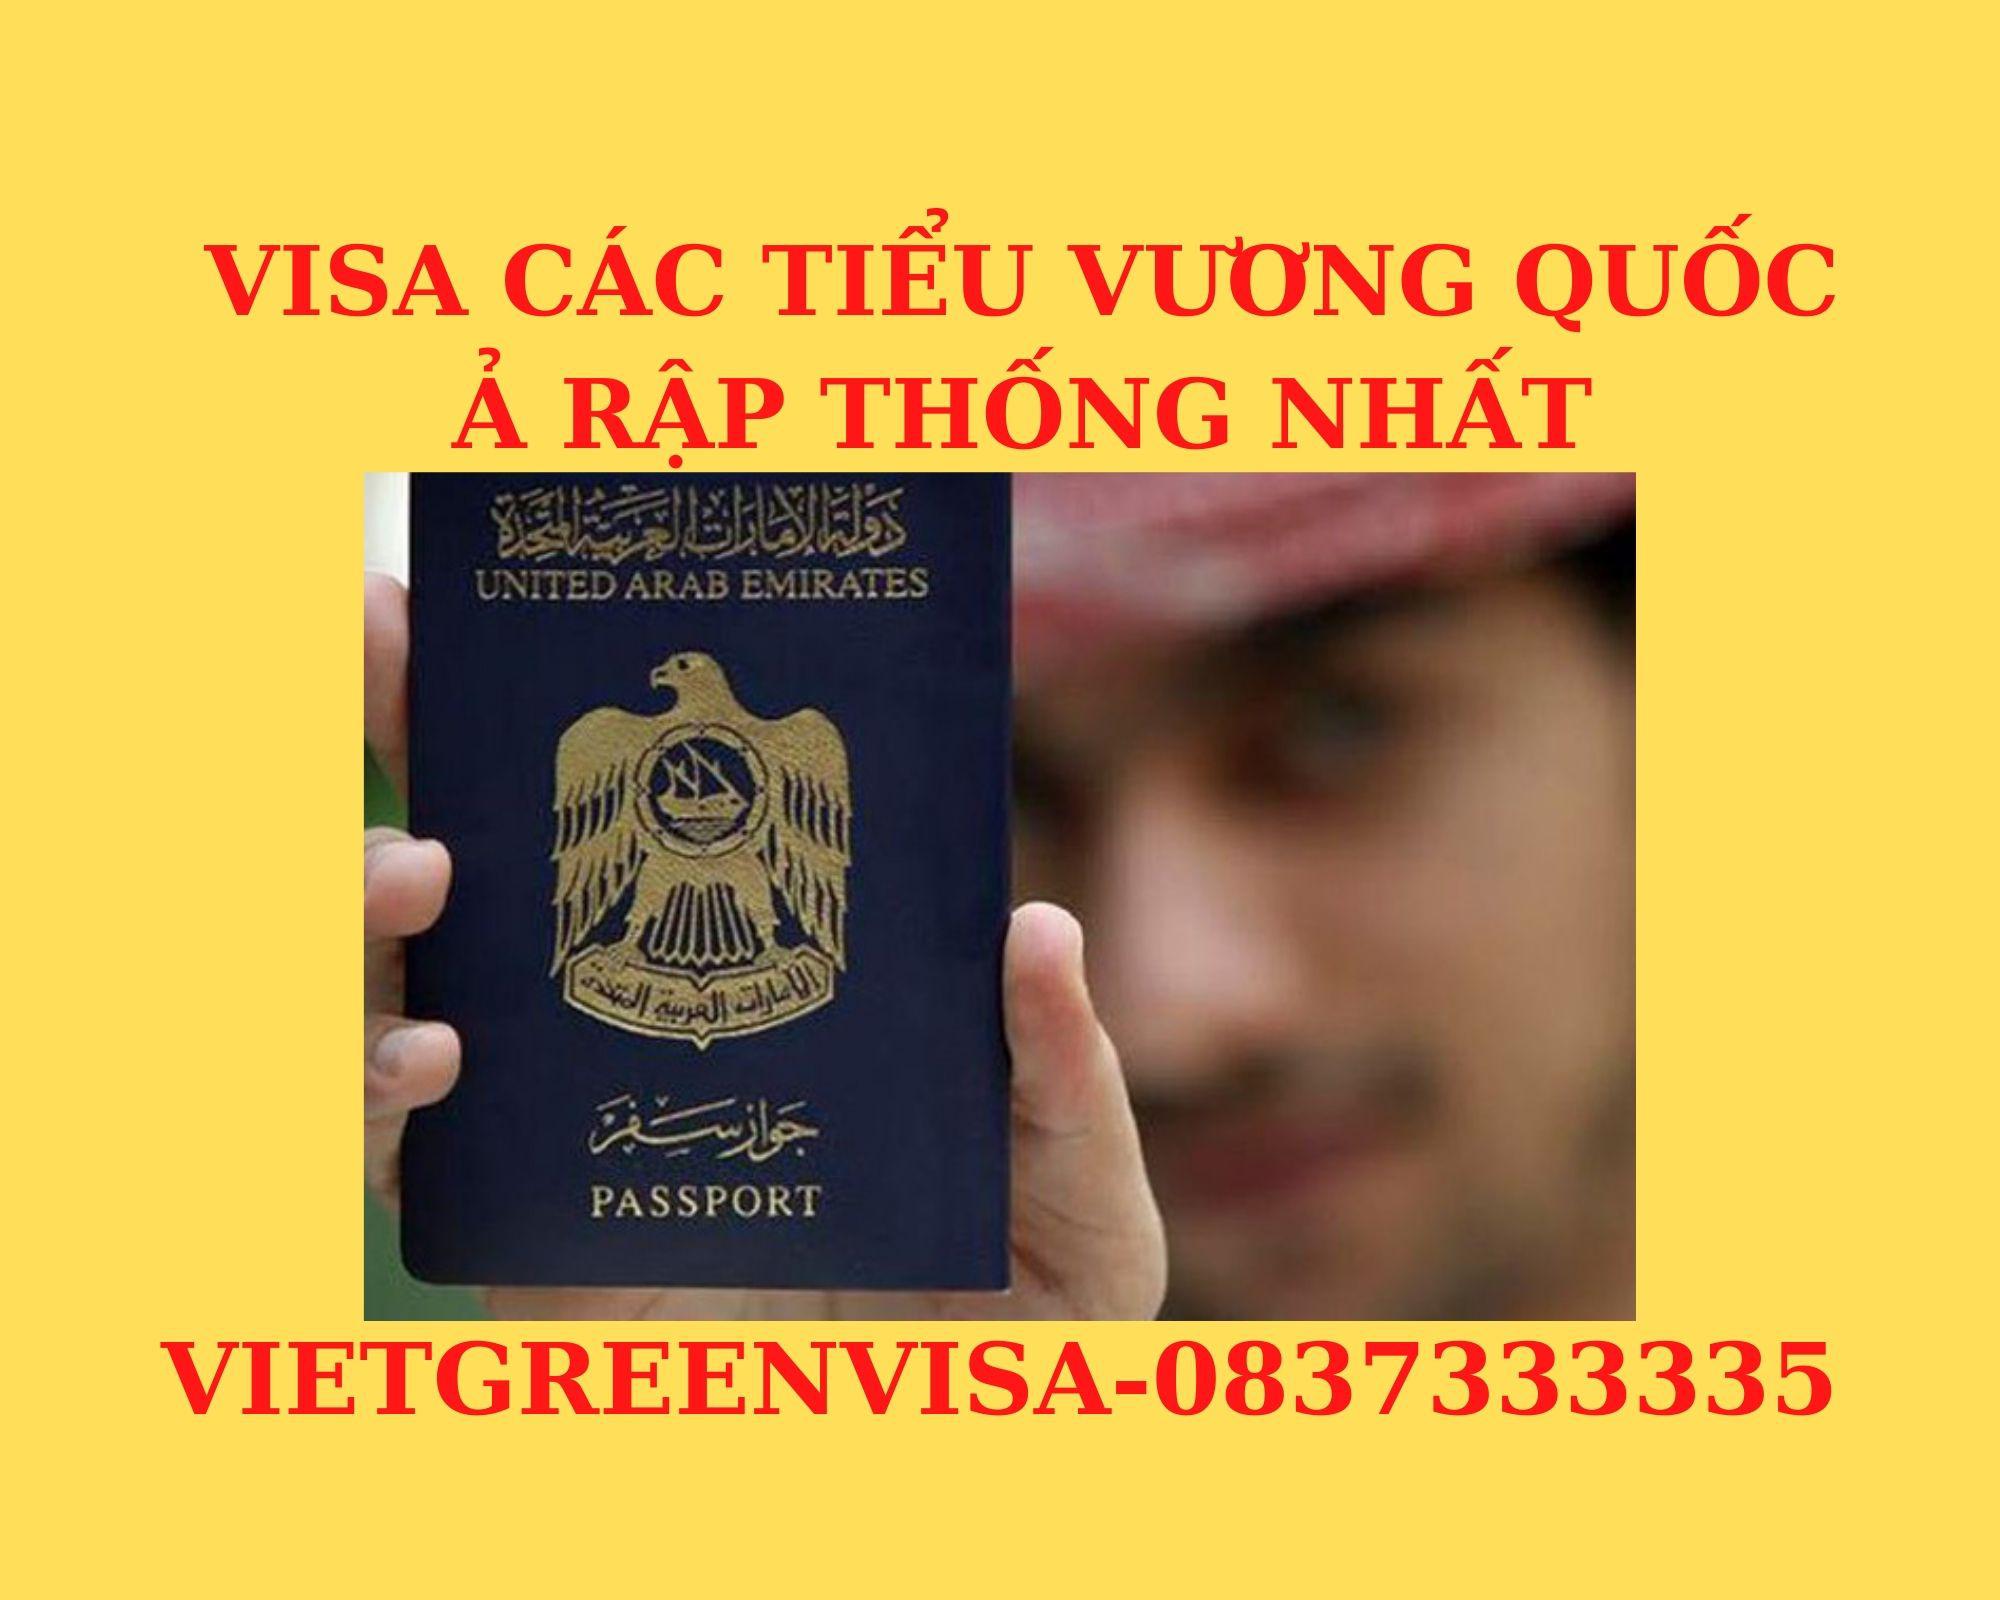 Visa thuyền viên đi Các Tiểu Vương Quốc Ả Rập Thống Nhất